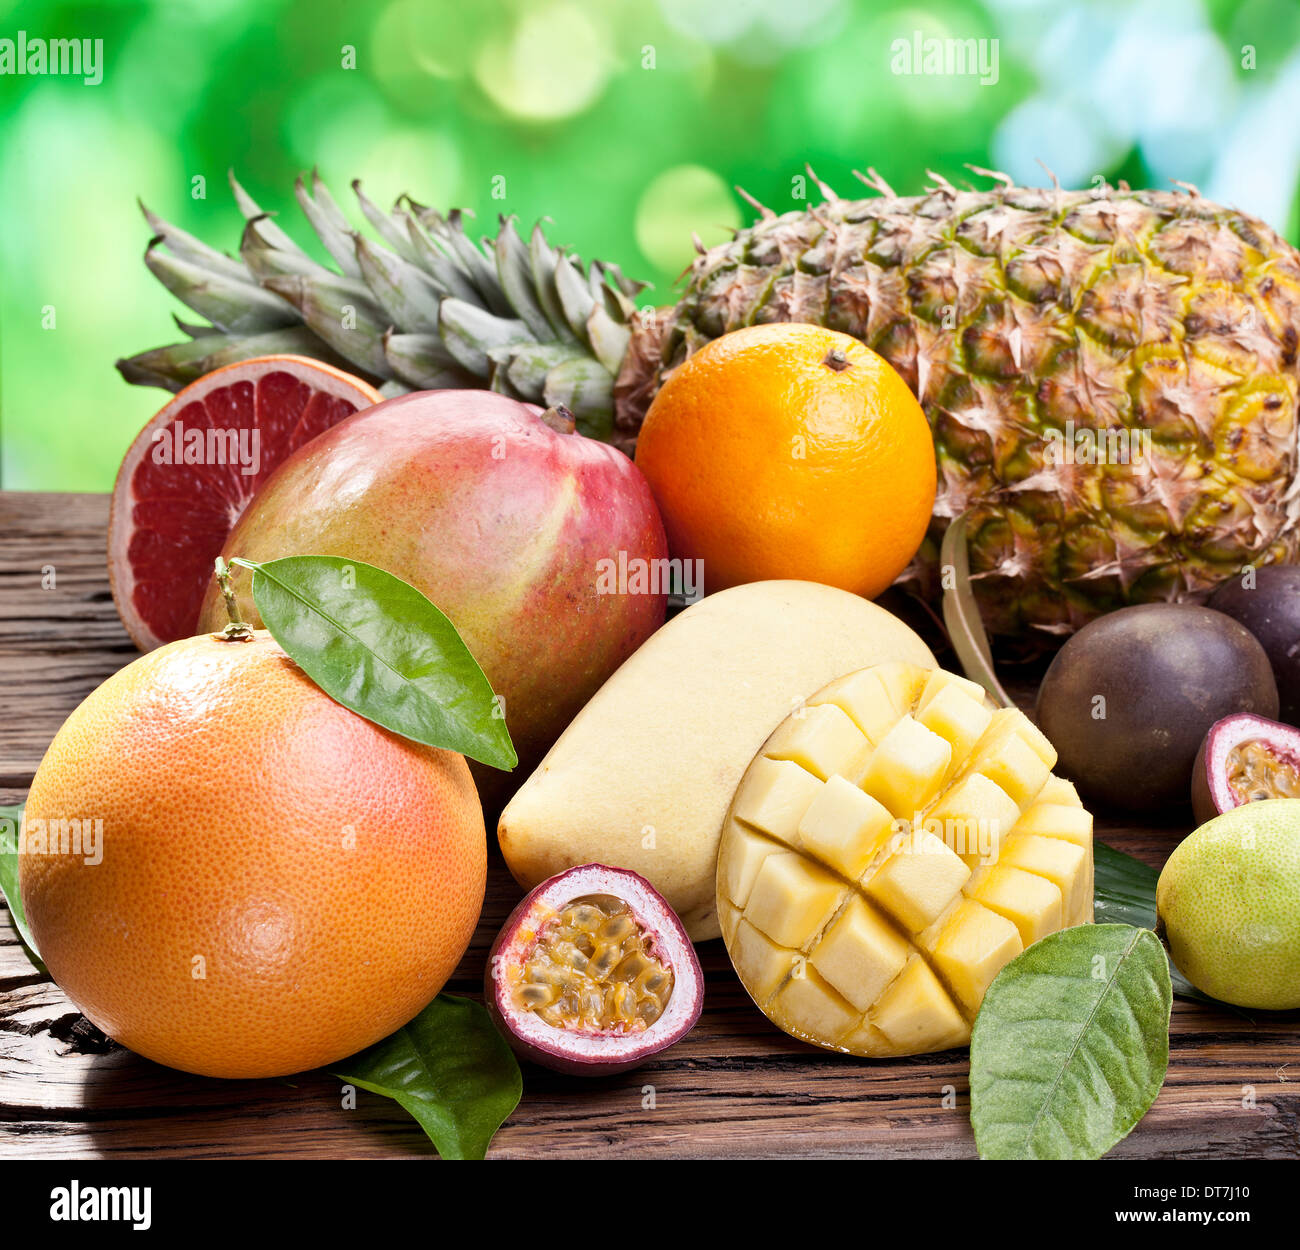 Fruits exotiques sur une table en bois avec feuillage vert sur l'arrière-plan. Banque D'Images